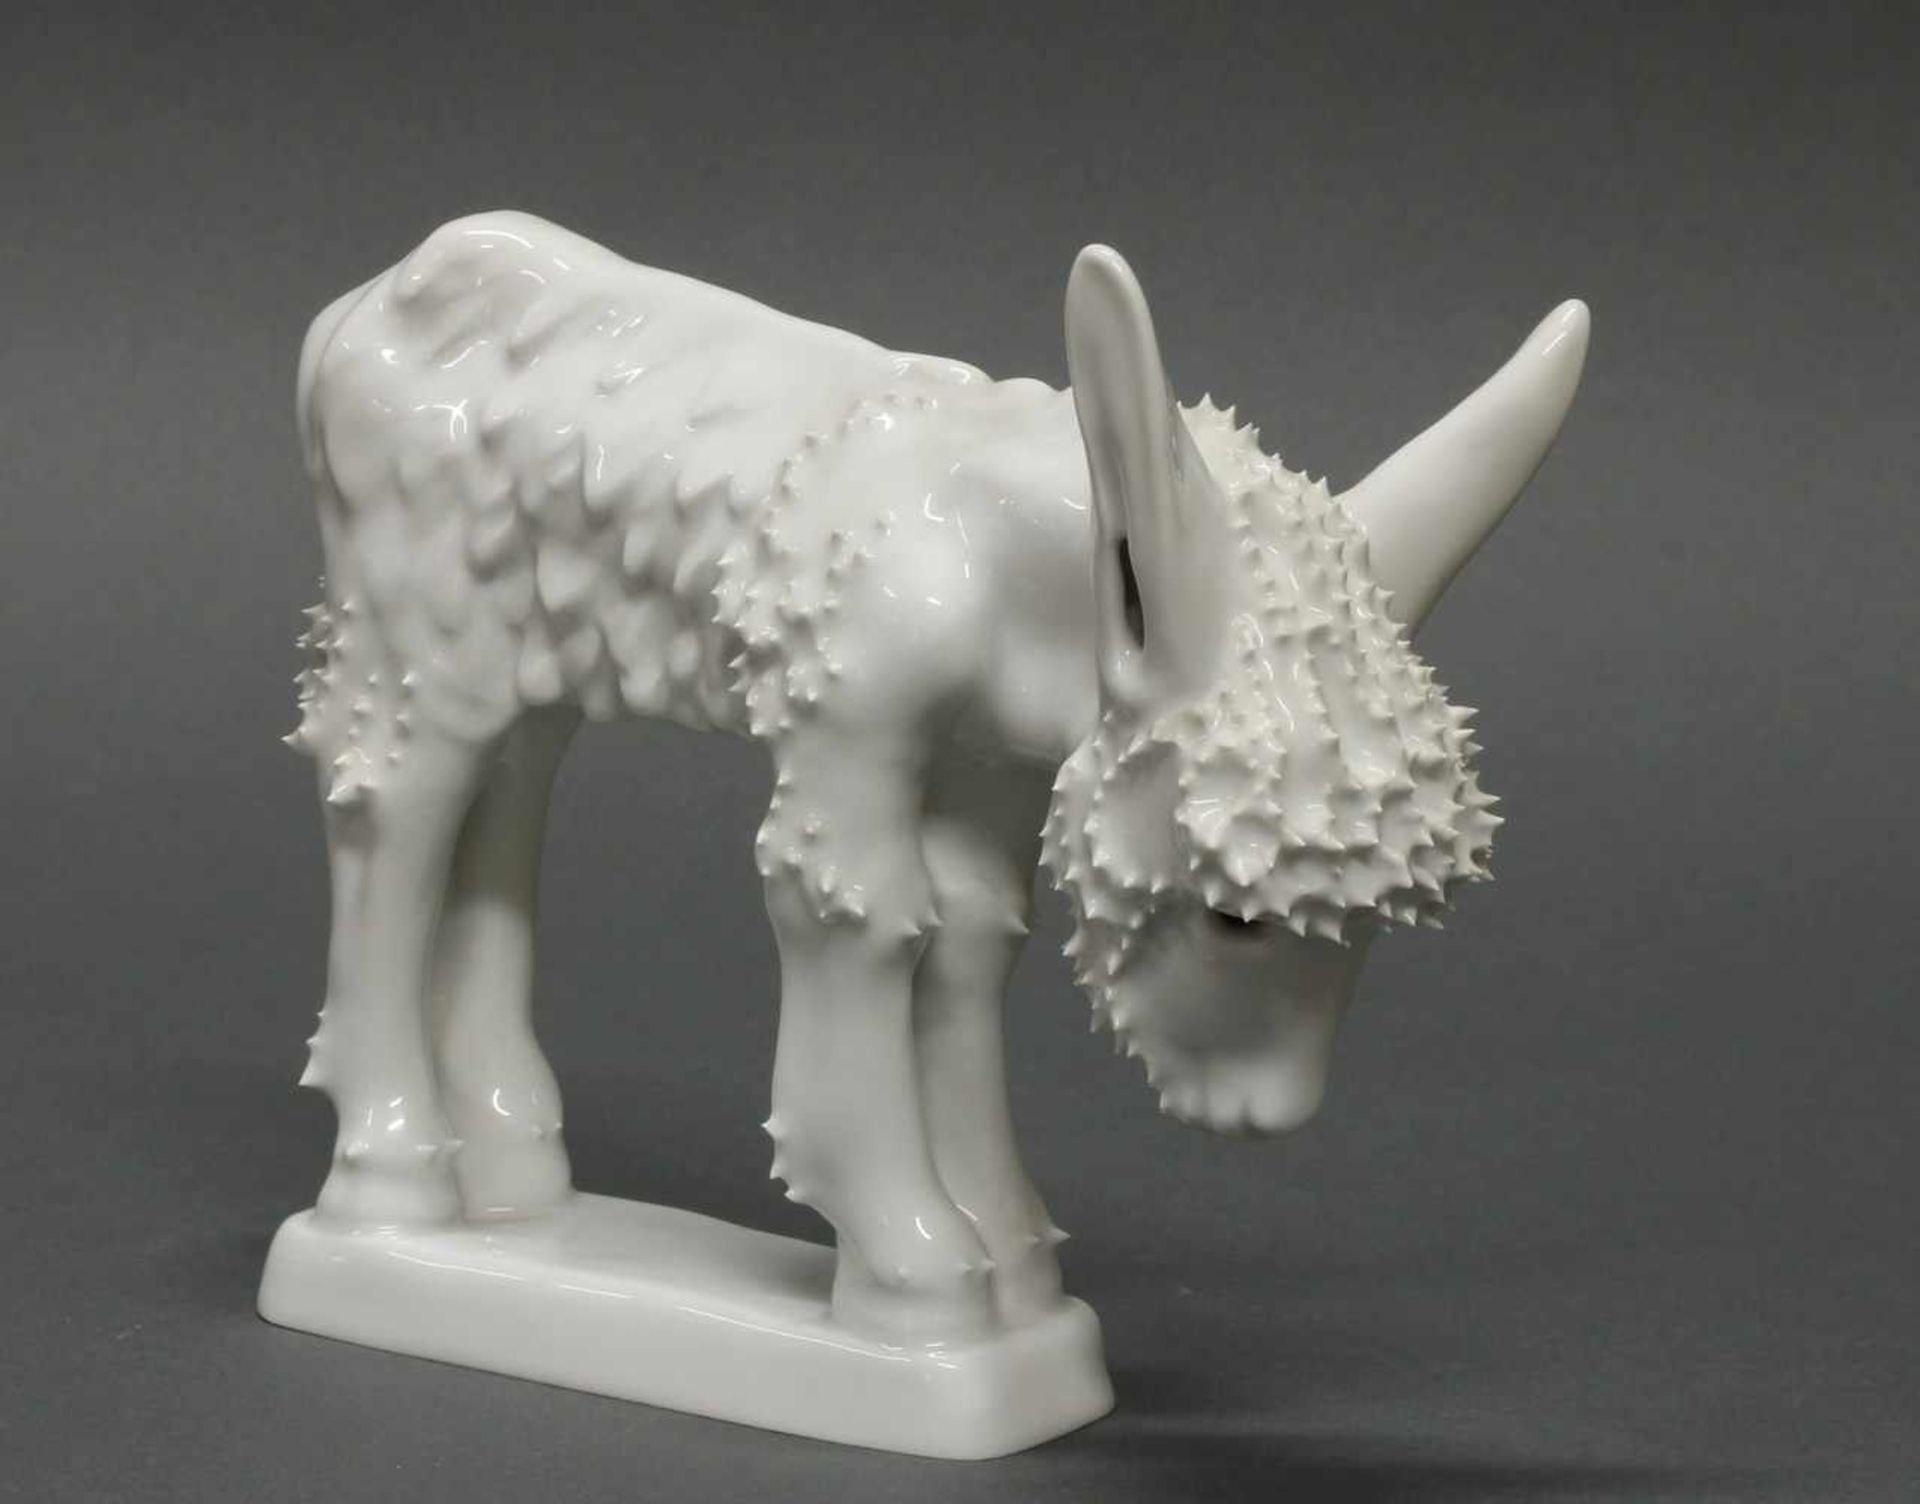 Porzellanfigur, "Esel", KPM Berlin, Weißporzellan, Modellentwurf von Judith Speer, 14 cm hoch- - -